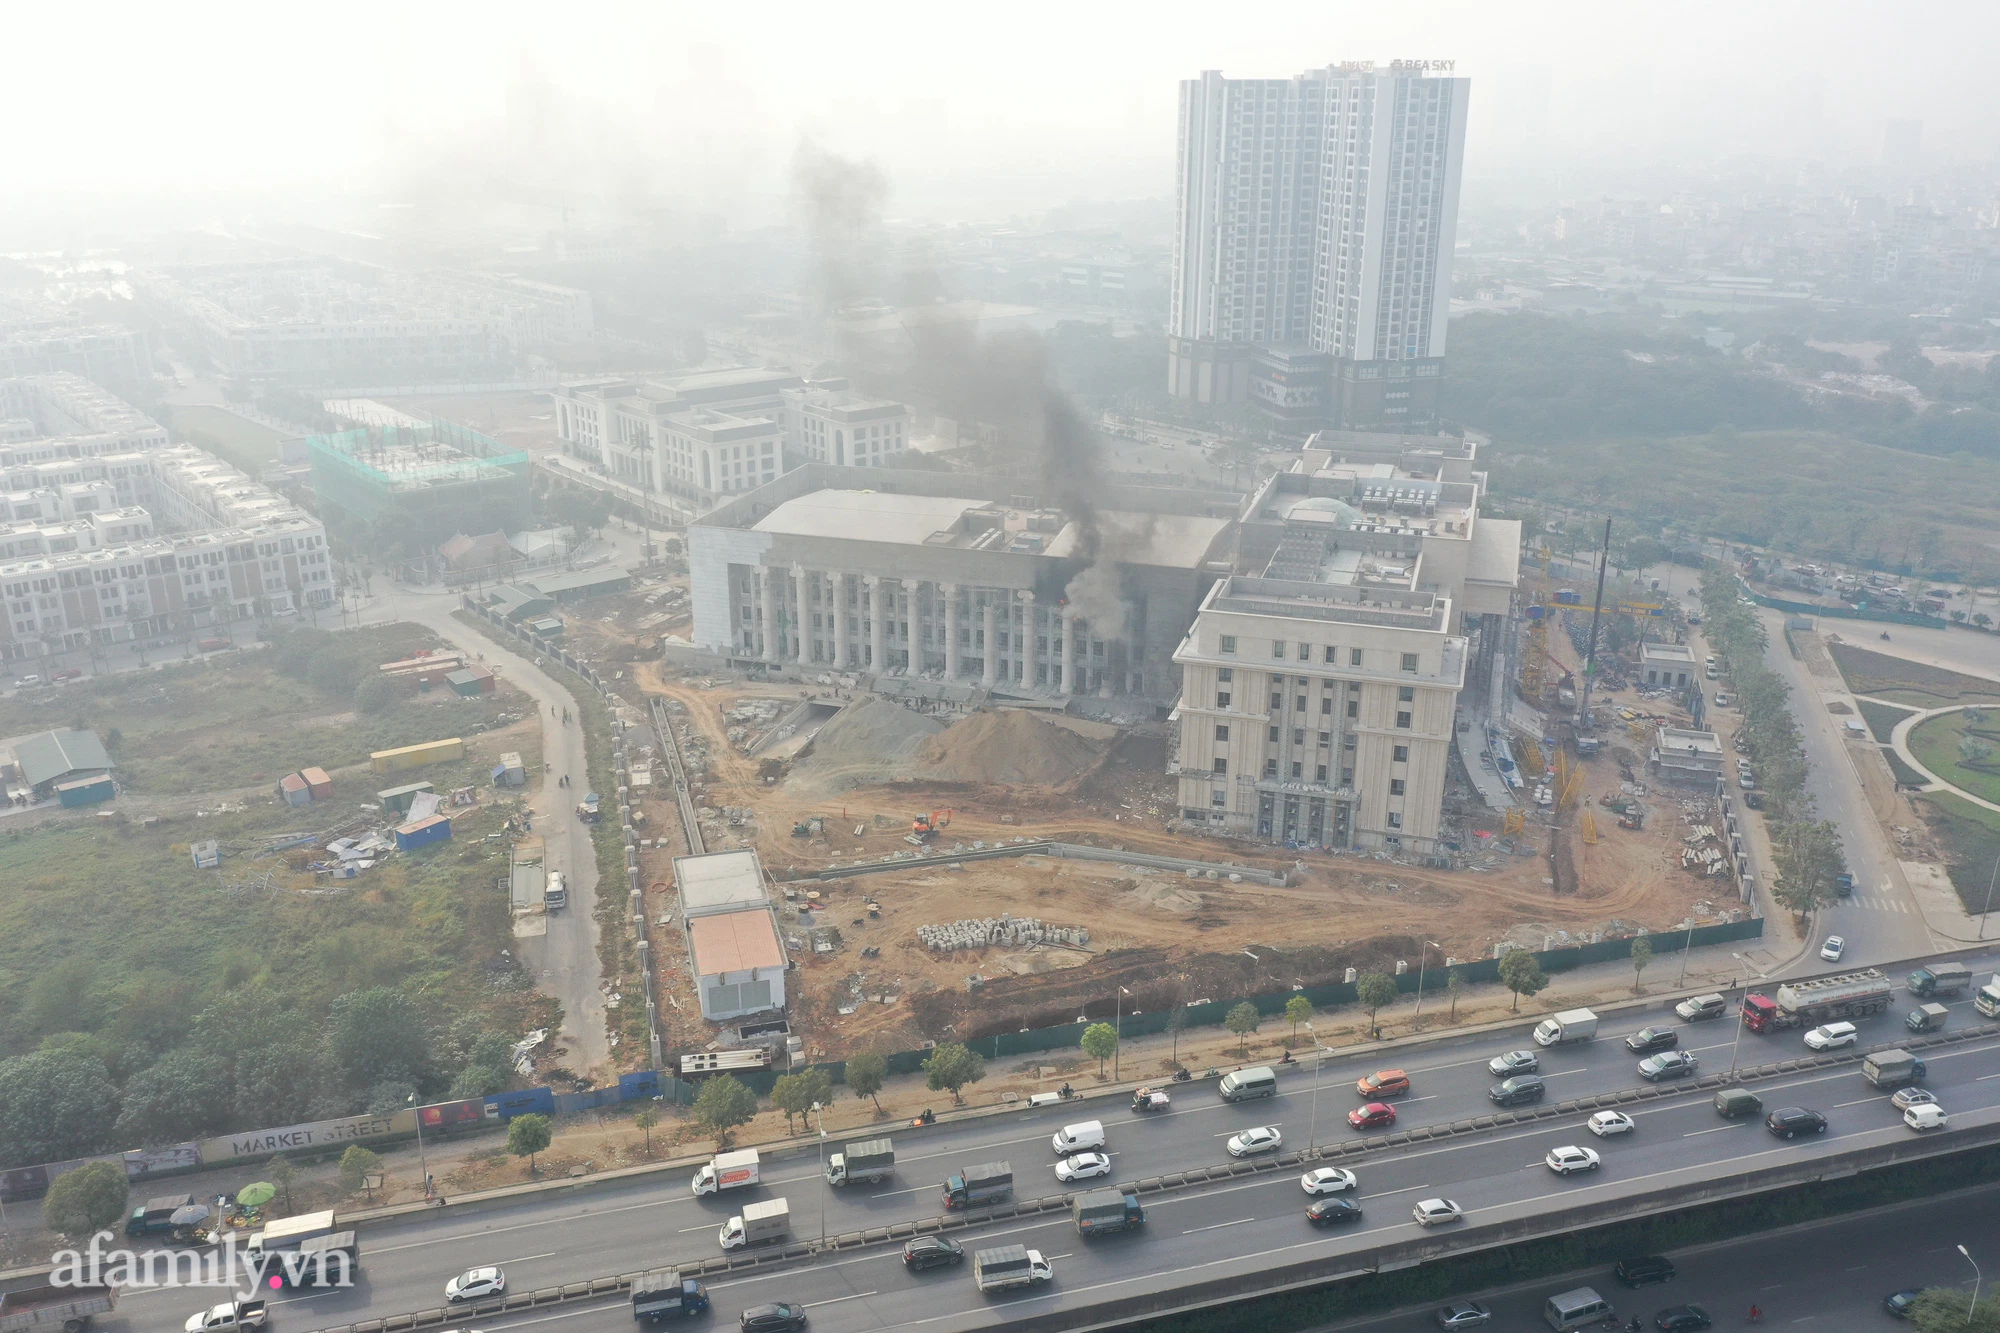 Cháy lớn tại trụ sở Tòa án nhân dân TP Hà Nội khi đang hoàn thiện - Ảnh 8.